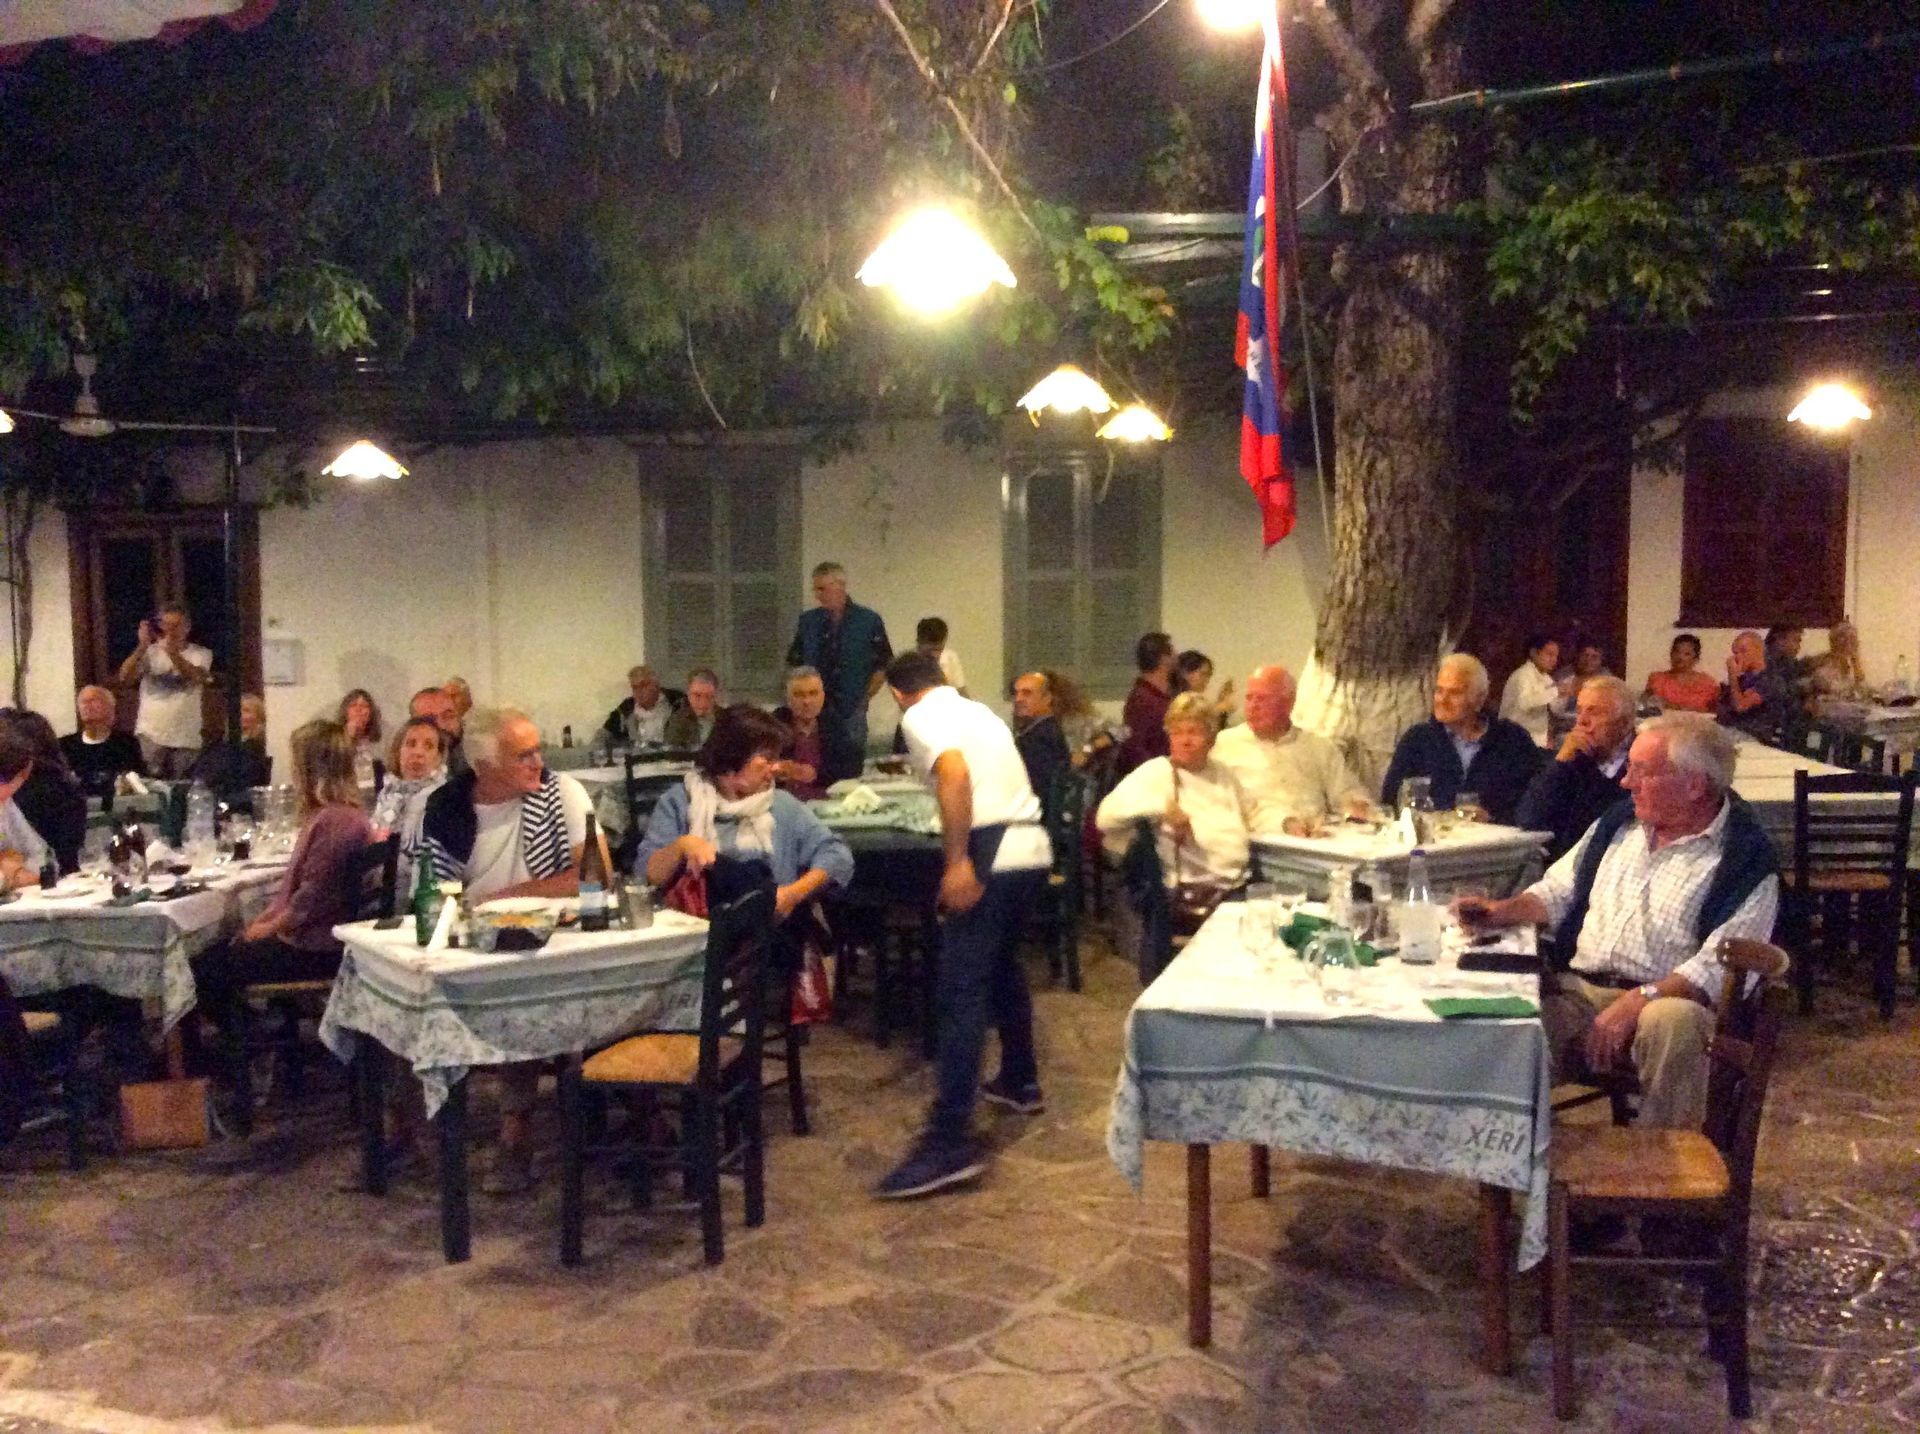 Rebetika Festival 2018 closing party at Xeri Elia (Douskos) Taverna